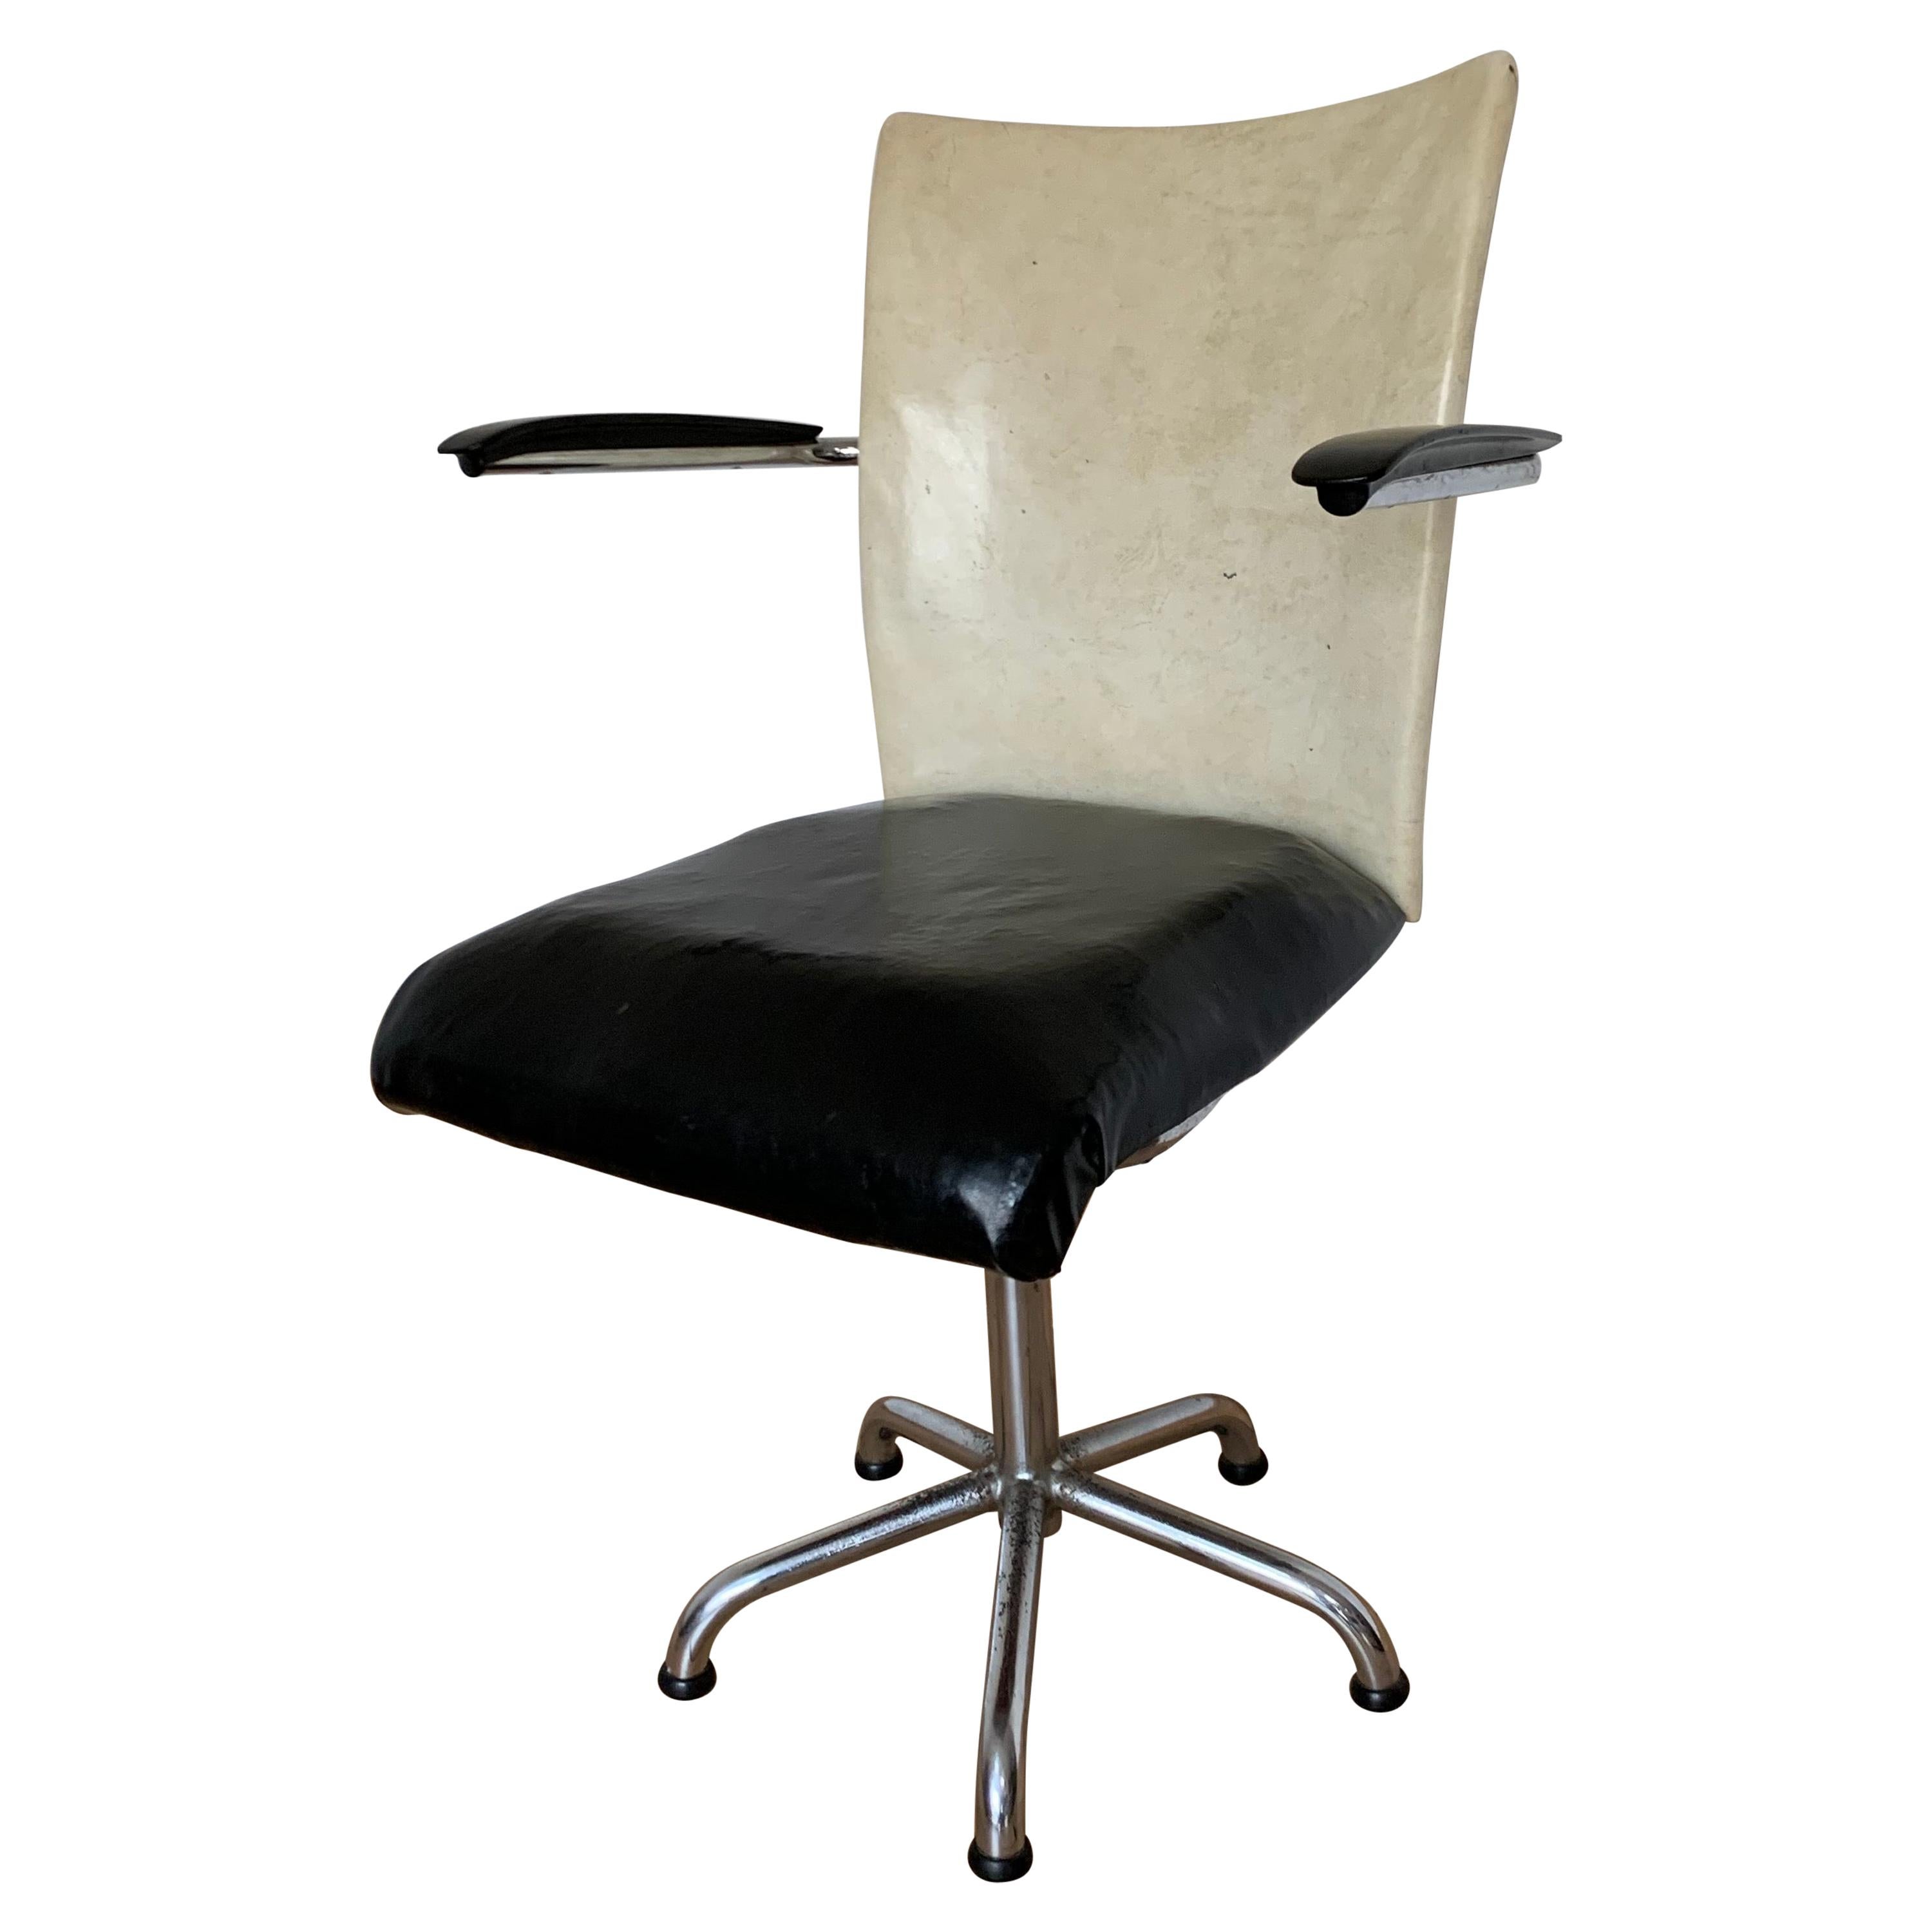 20th Century Industrial Desk Chair from Gebroeders De Wit, Toon de Wit, 1960s